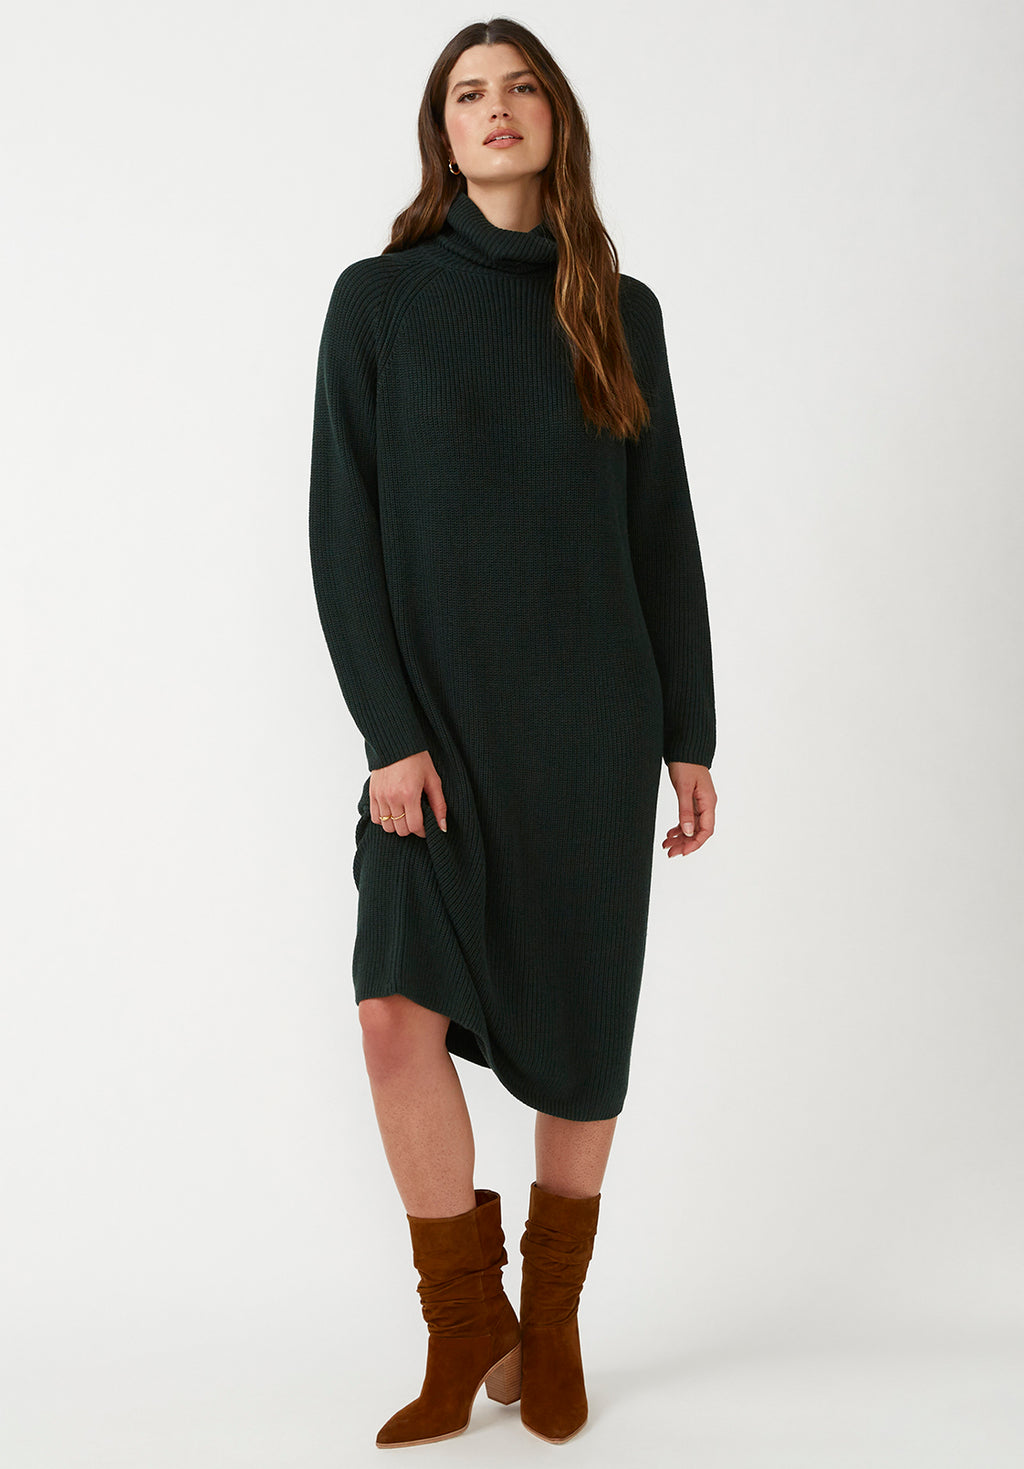 Paityn Women's Turtleneck Sweater Dress in Dark Green – Buffalo